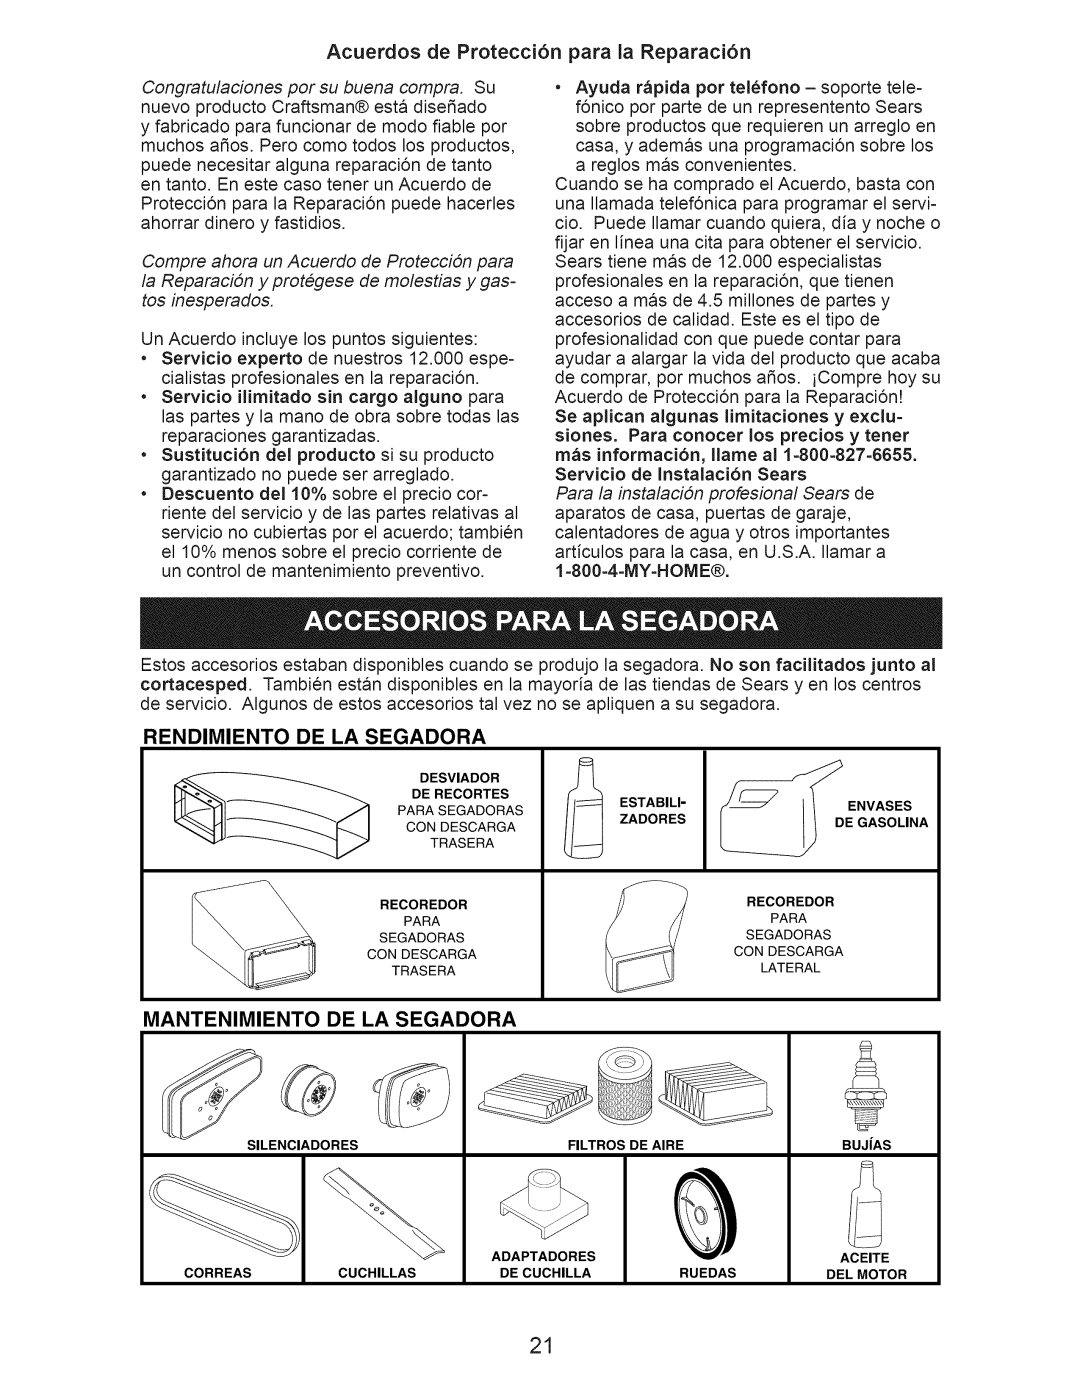 Craftsman 917.389010 manual Acuerdos de Protecci6n para la Reparaci6n, Rendimiento, De La Segadora, Mantenimiento 